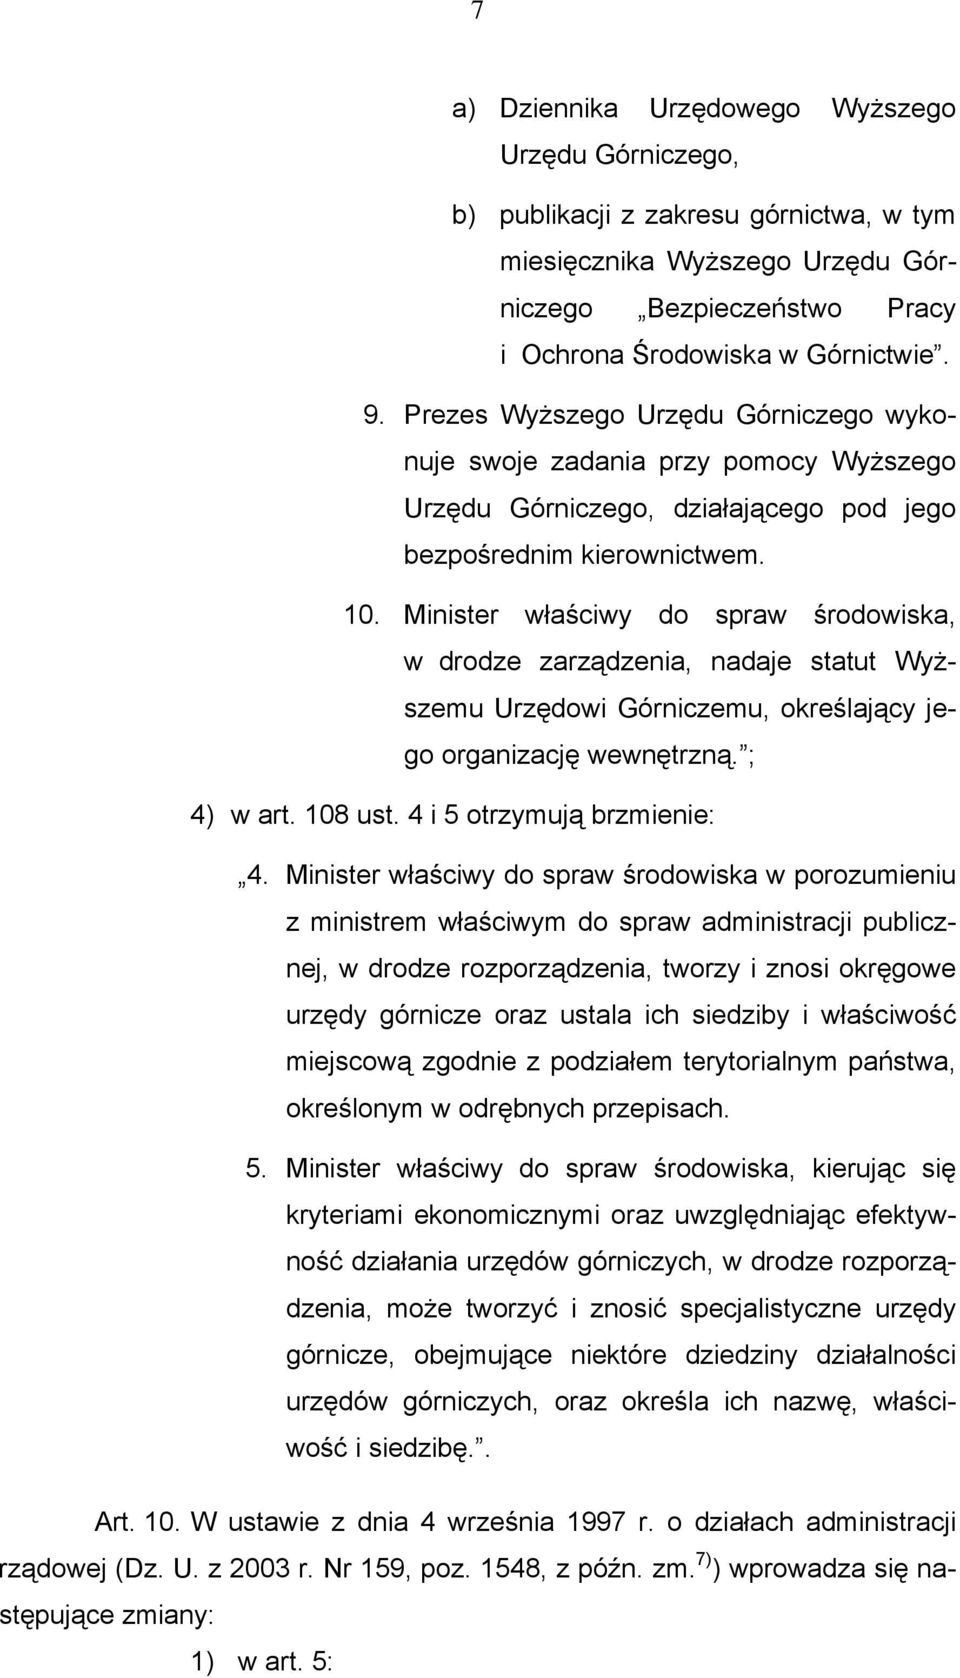 Minister właściwy do spraw środowiska, w drodze zarządzenia, nadaje statut Wyższemu Urzędowi Górniczemu, określający jego organizację wewnętrzną. ; 4) w art. 108 ust. 4 i 5 otrzymują brzmienie: 4.